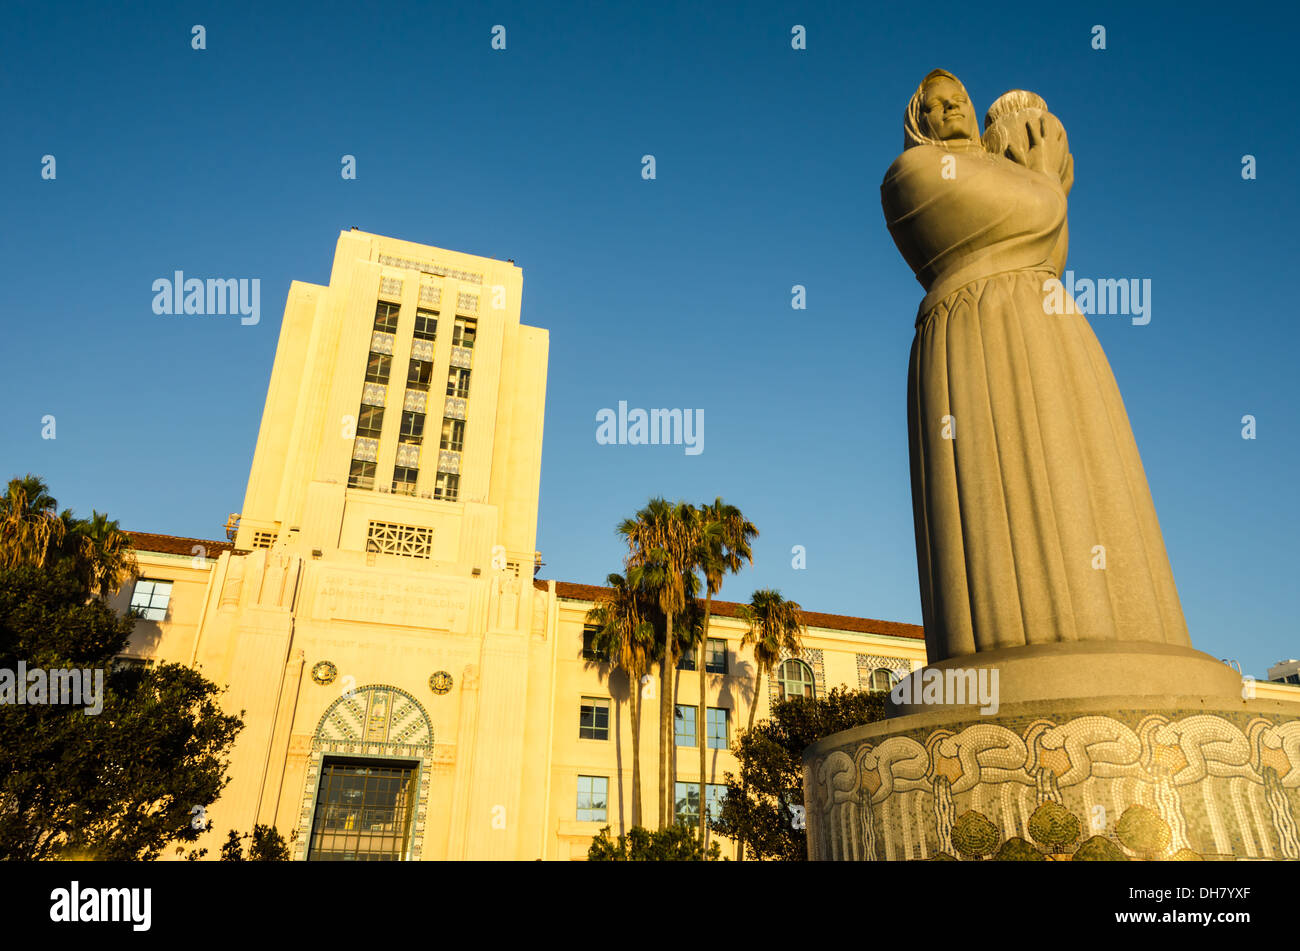 Die Brunnenfigur "Guardian of Water". San Diego, California, Vereinigte Staaten von Amerika. Stockfoto